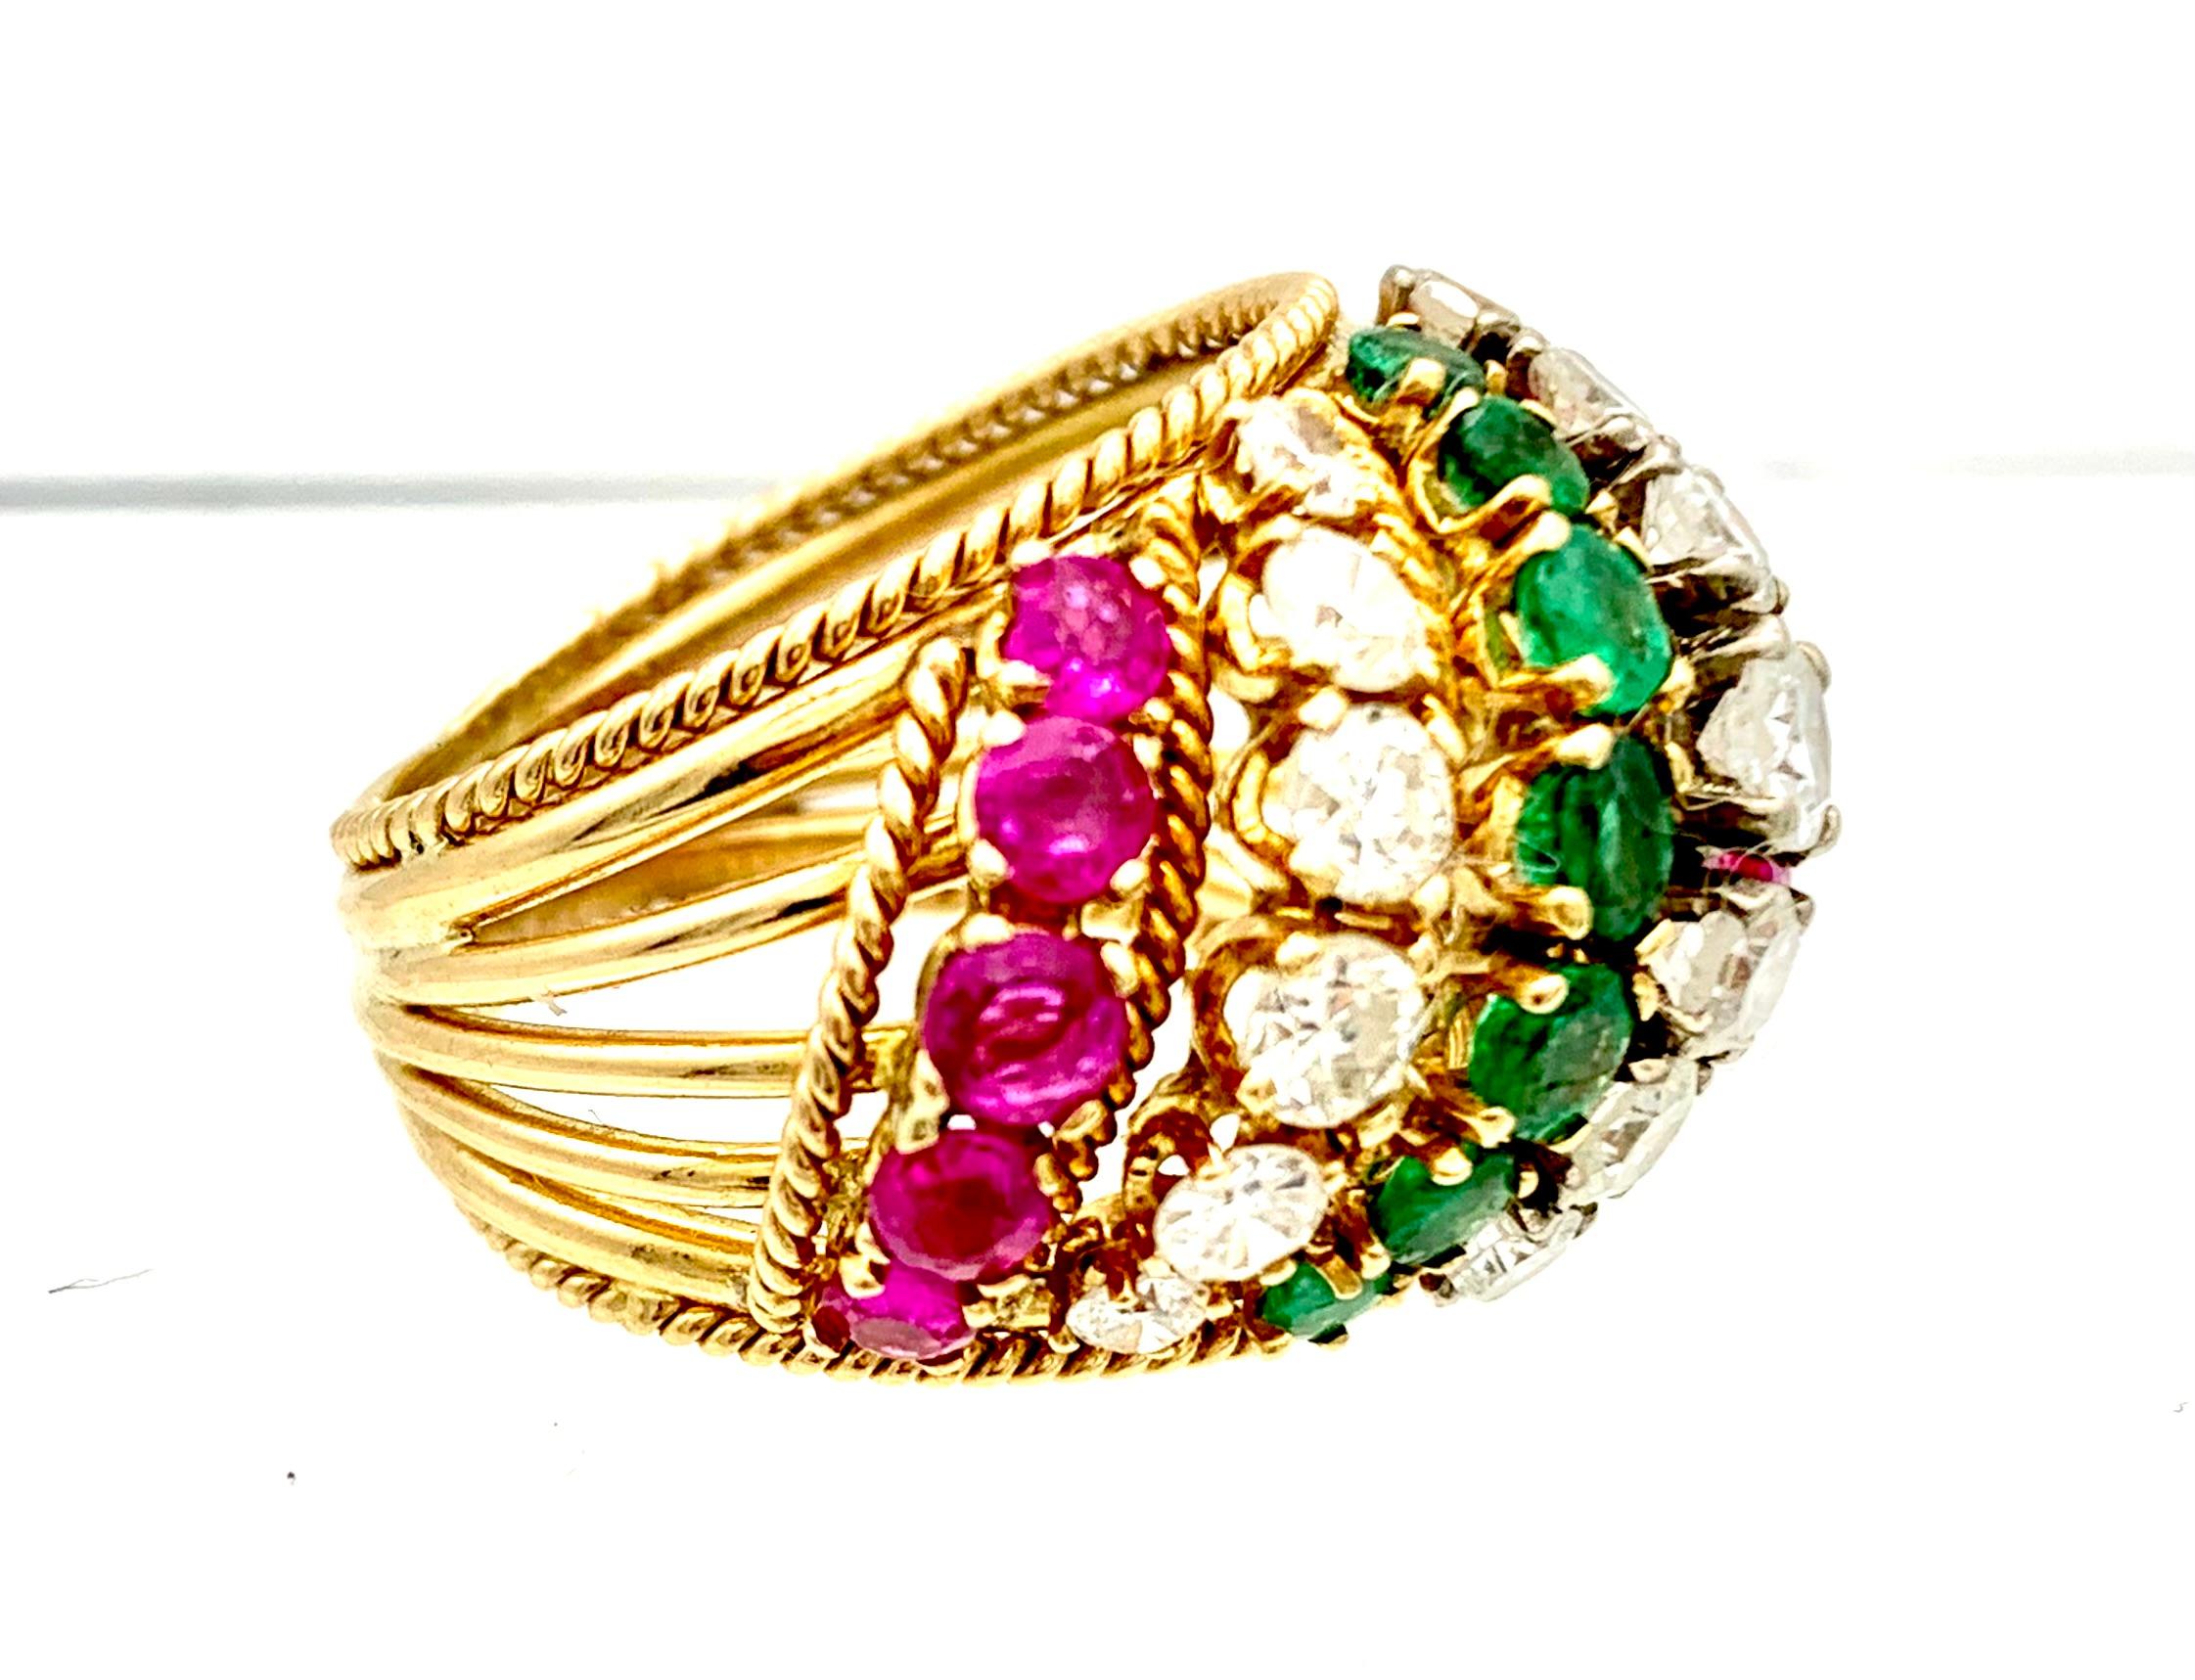 Dieser elegante Cocktailring für den kleinen Finger ist aus 14-karätigem Gold gefertigt und mit diagonalen Streifen verziert, die mit Smaragden, Steinen und Diamanten besetzt sind.